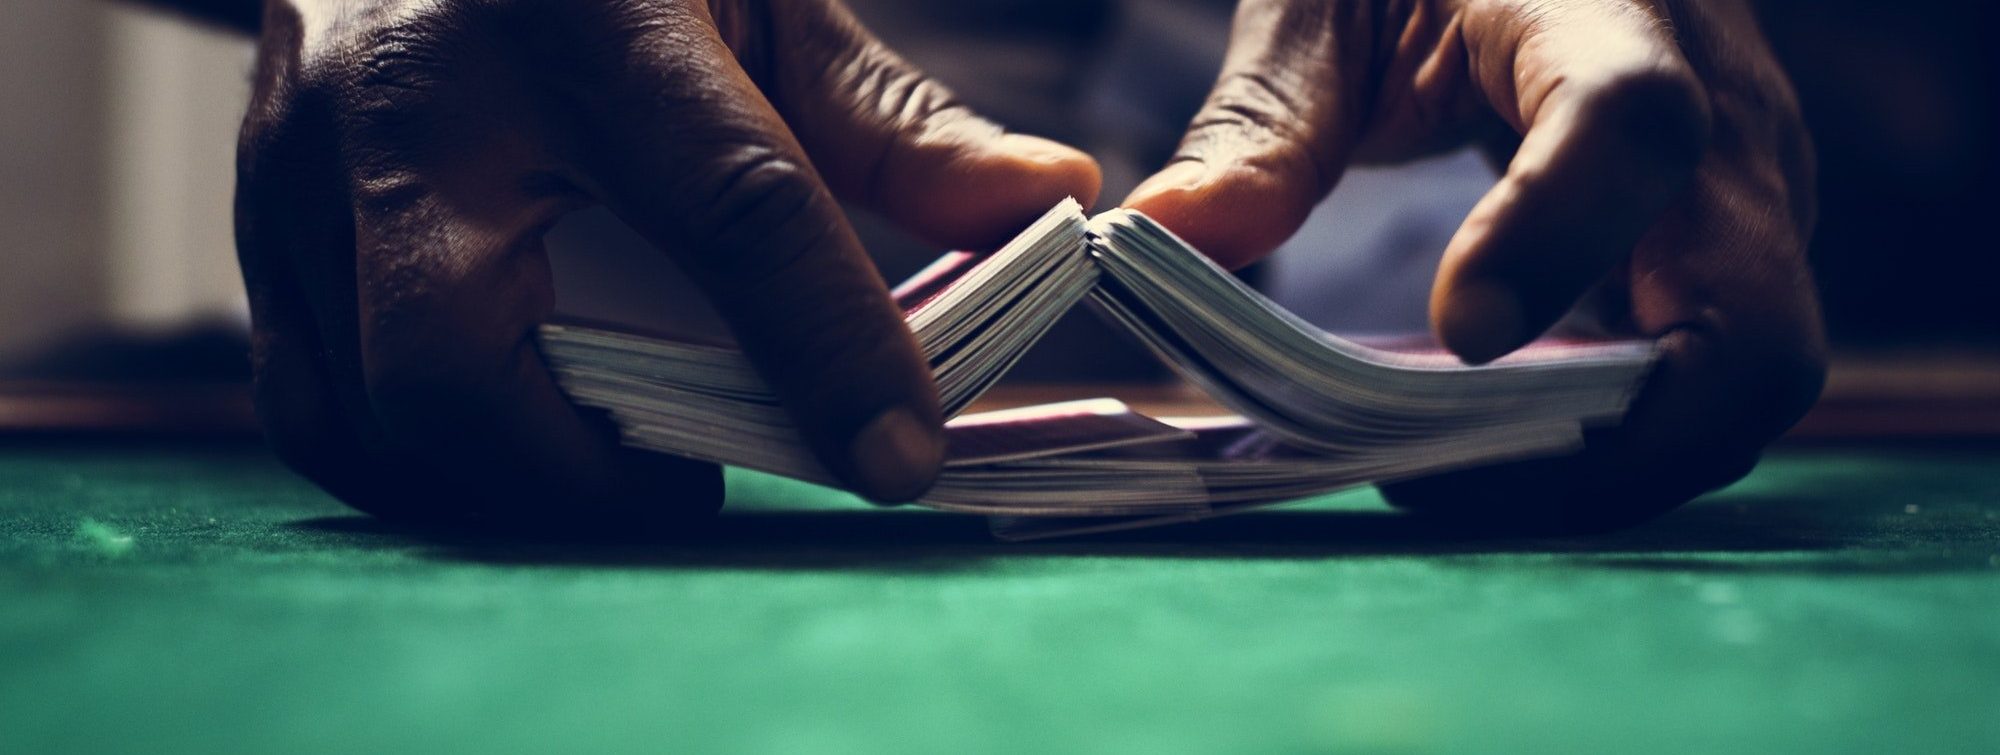 Dealer shuffling a deck of cards in casino